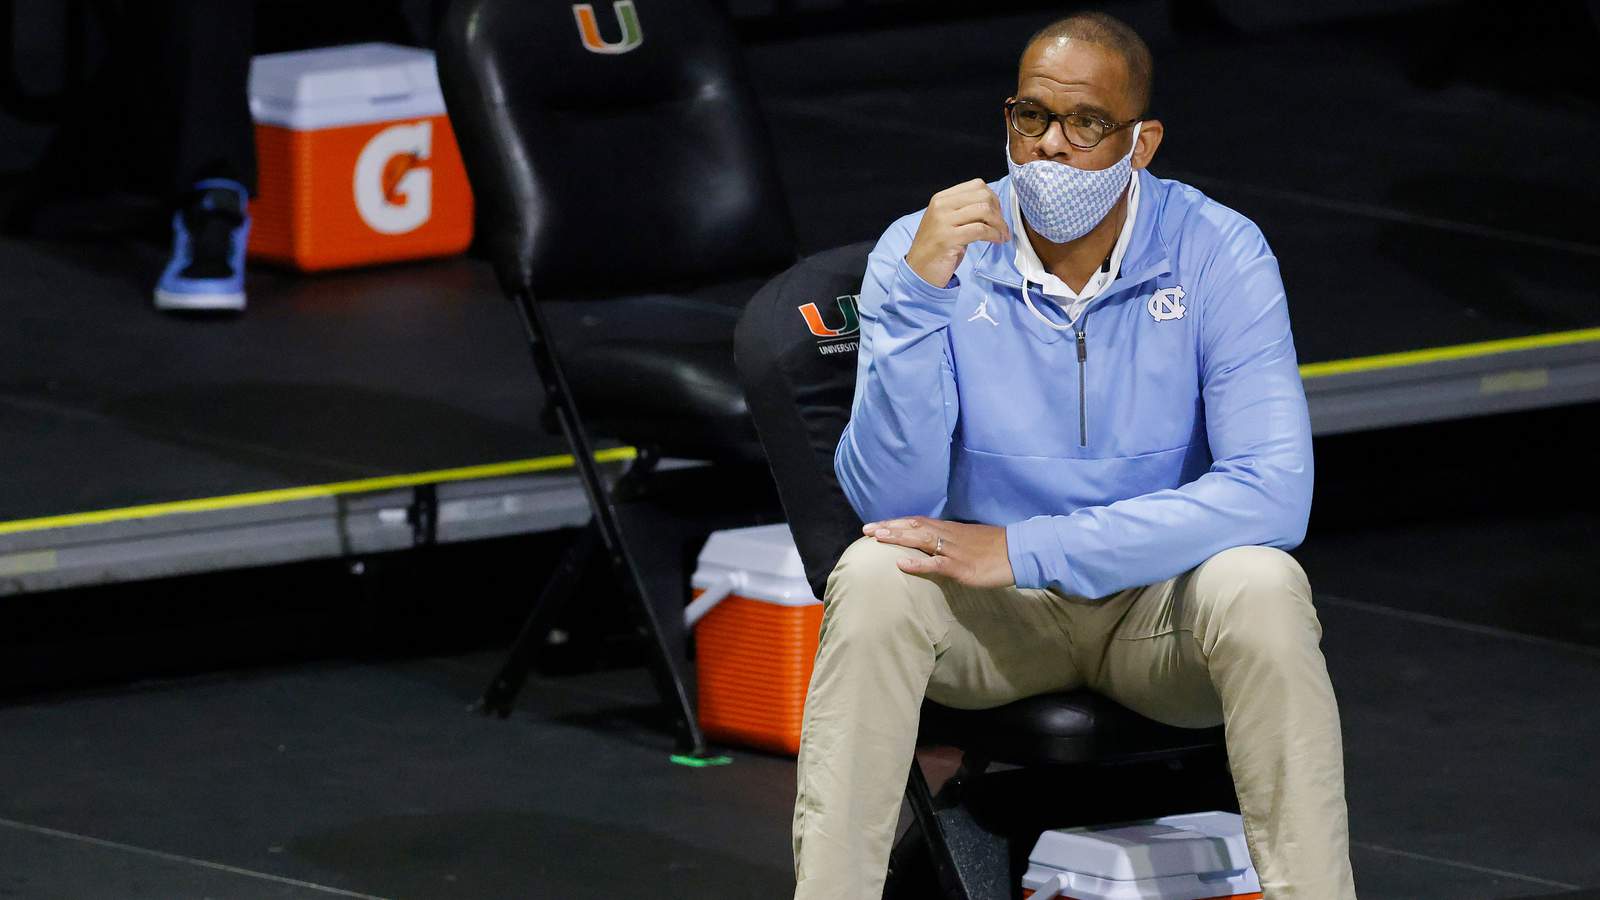 UNC hires Hubert Davis as its next men’s basketball coach